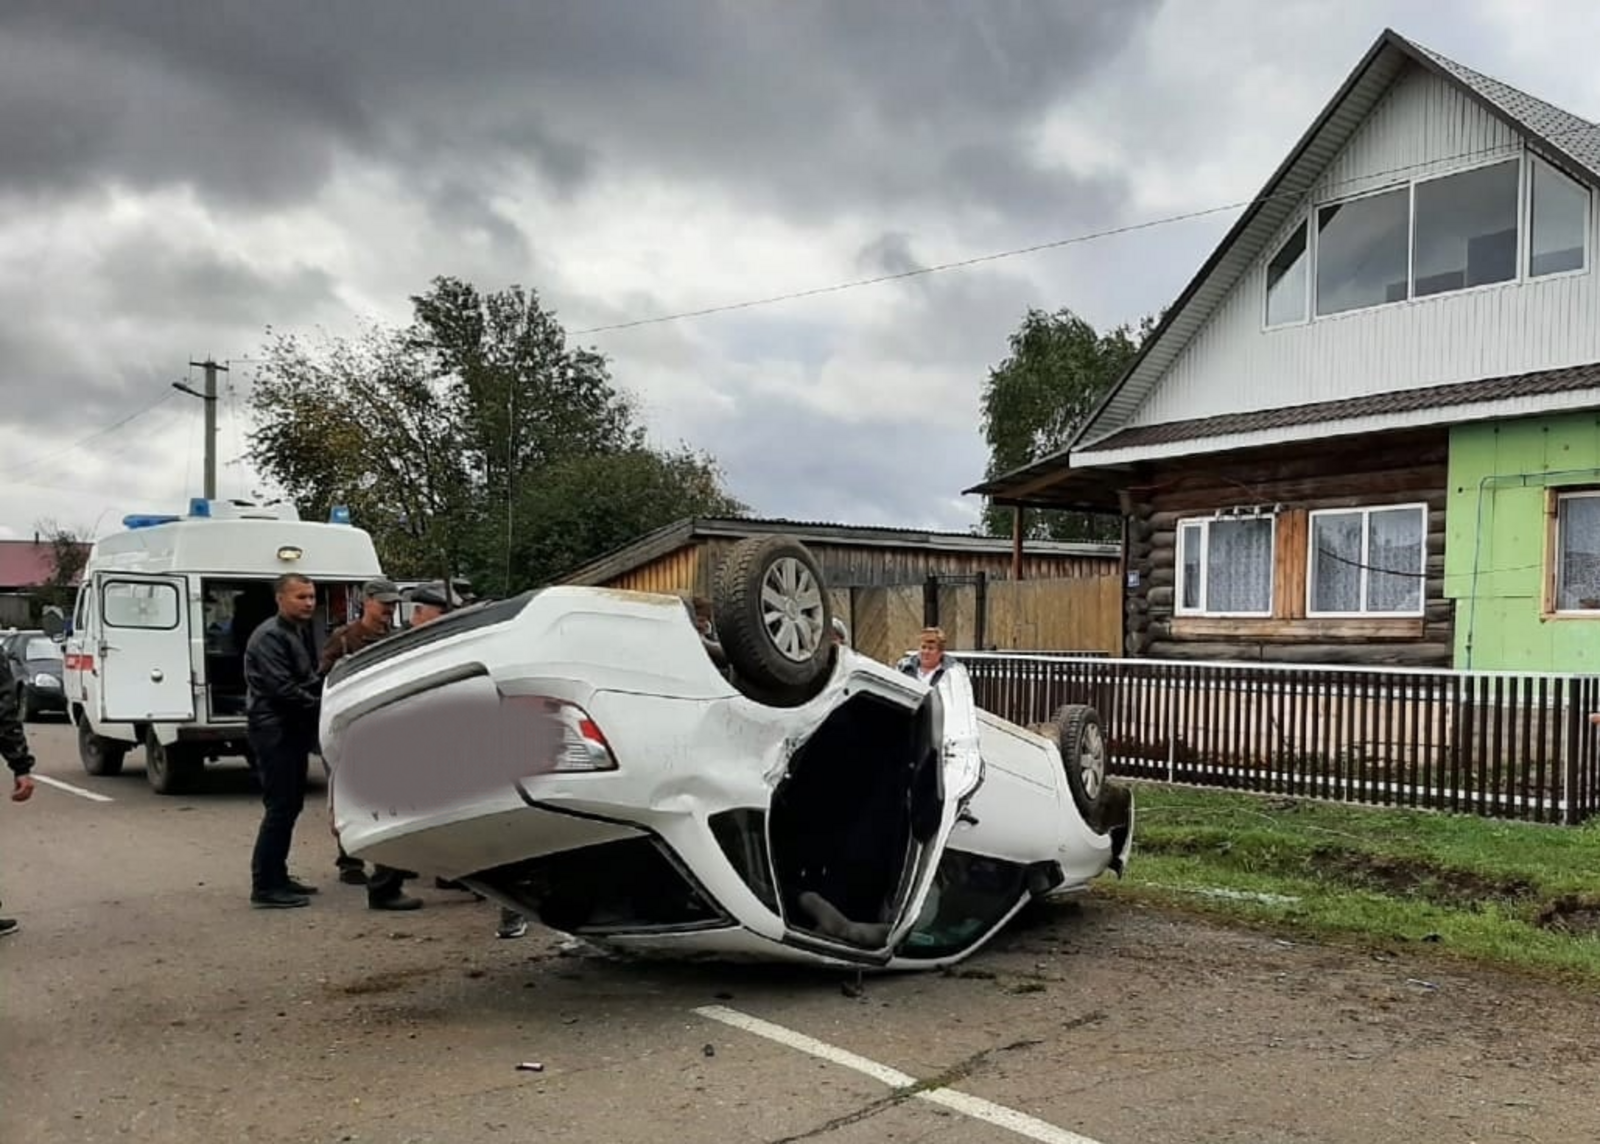 Сегодня в Ярославке произошла авария с летальным исходом